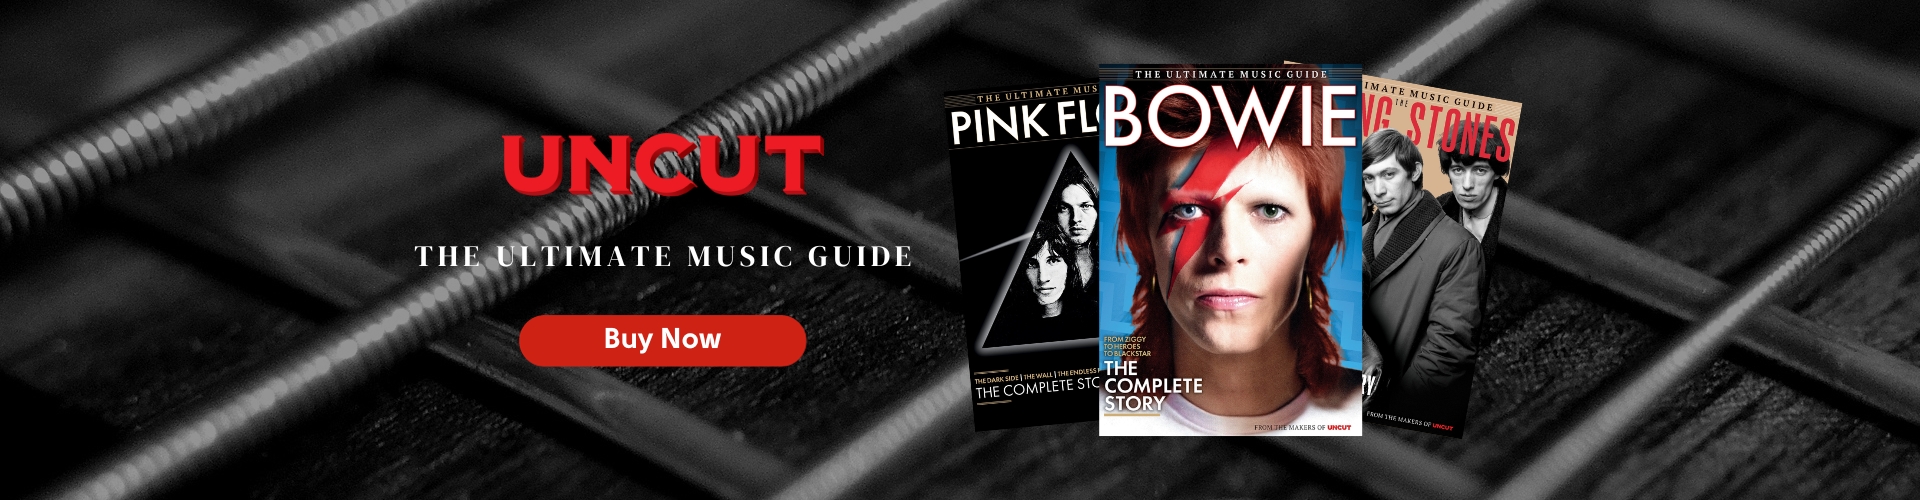 Buy Uncut Ultimate Music Guide